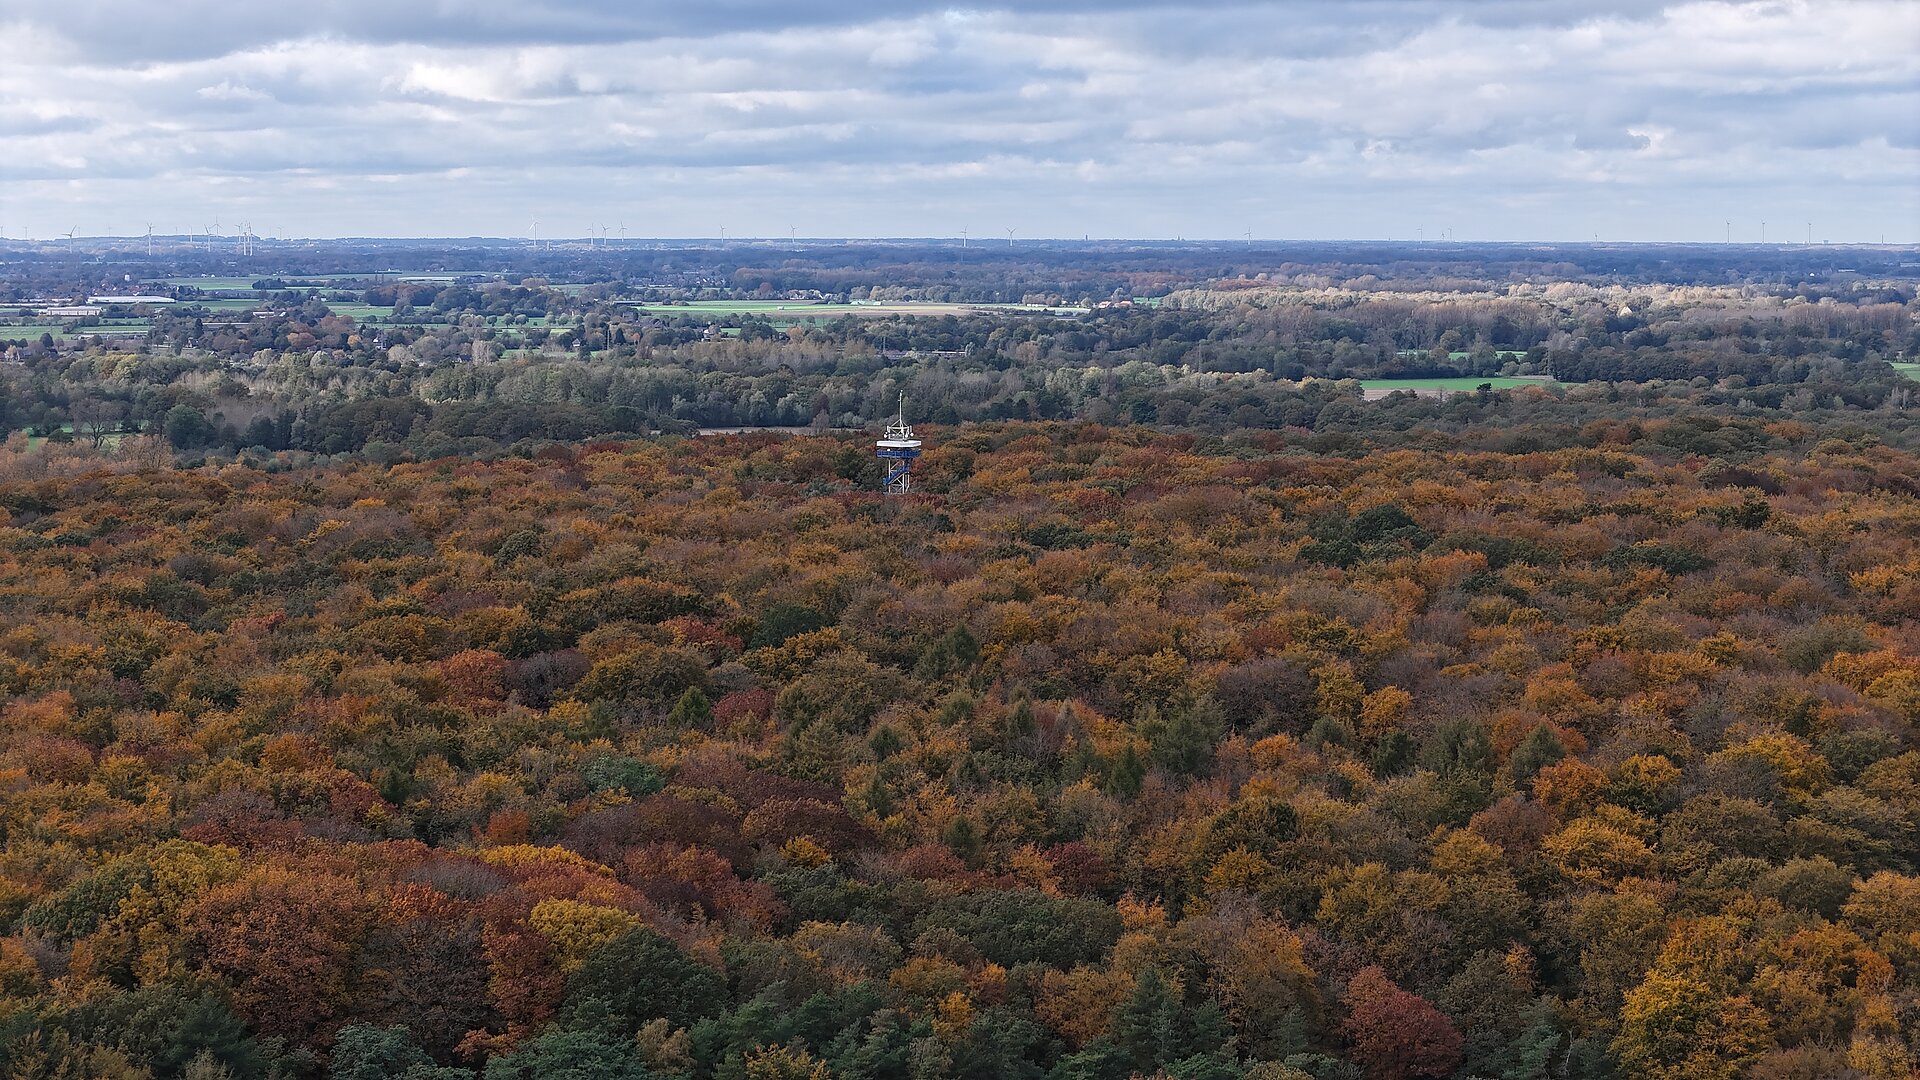 Luftbild mit Aussichtsturm im Wald